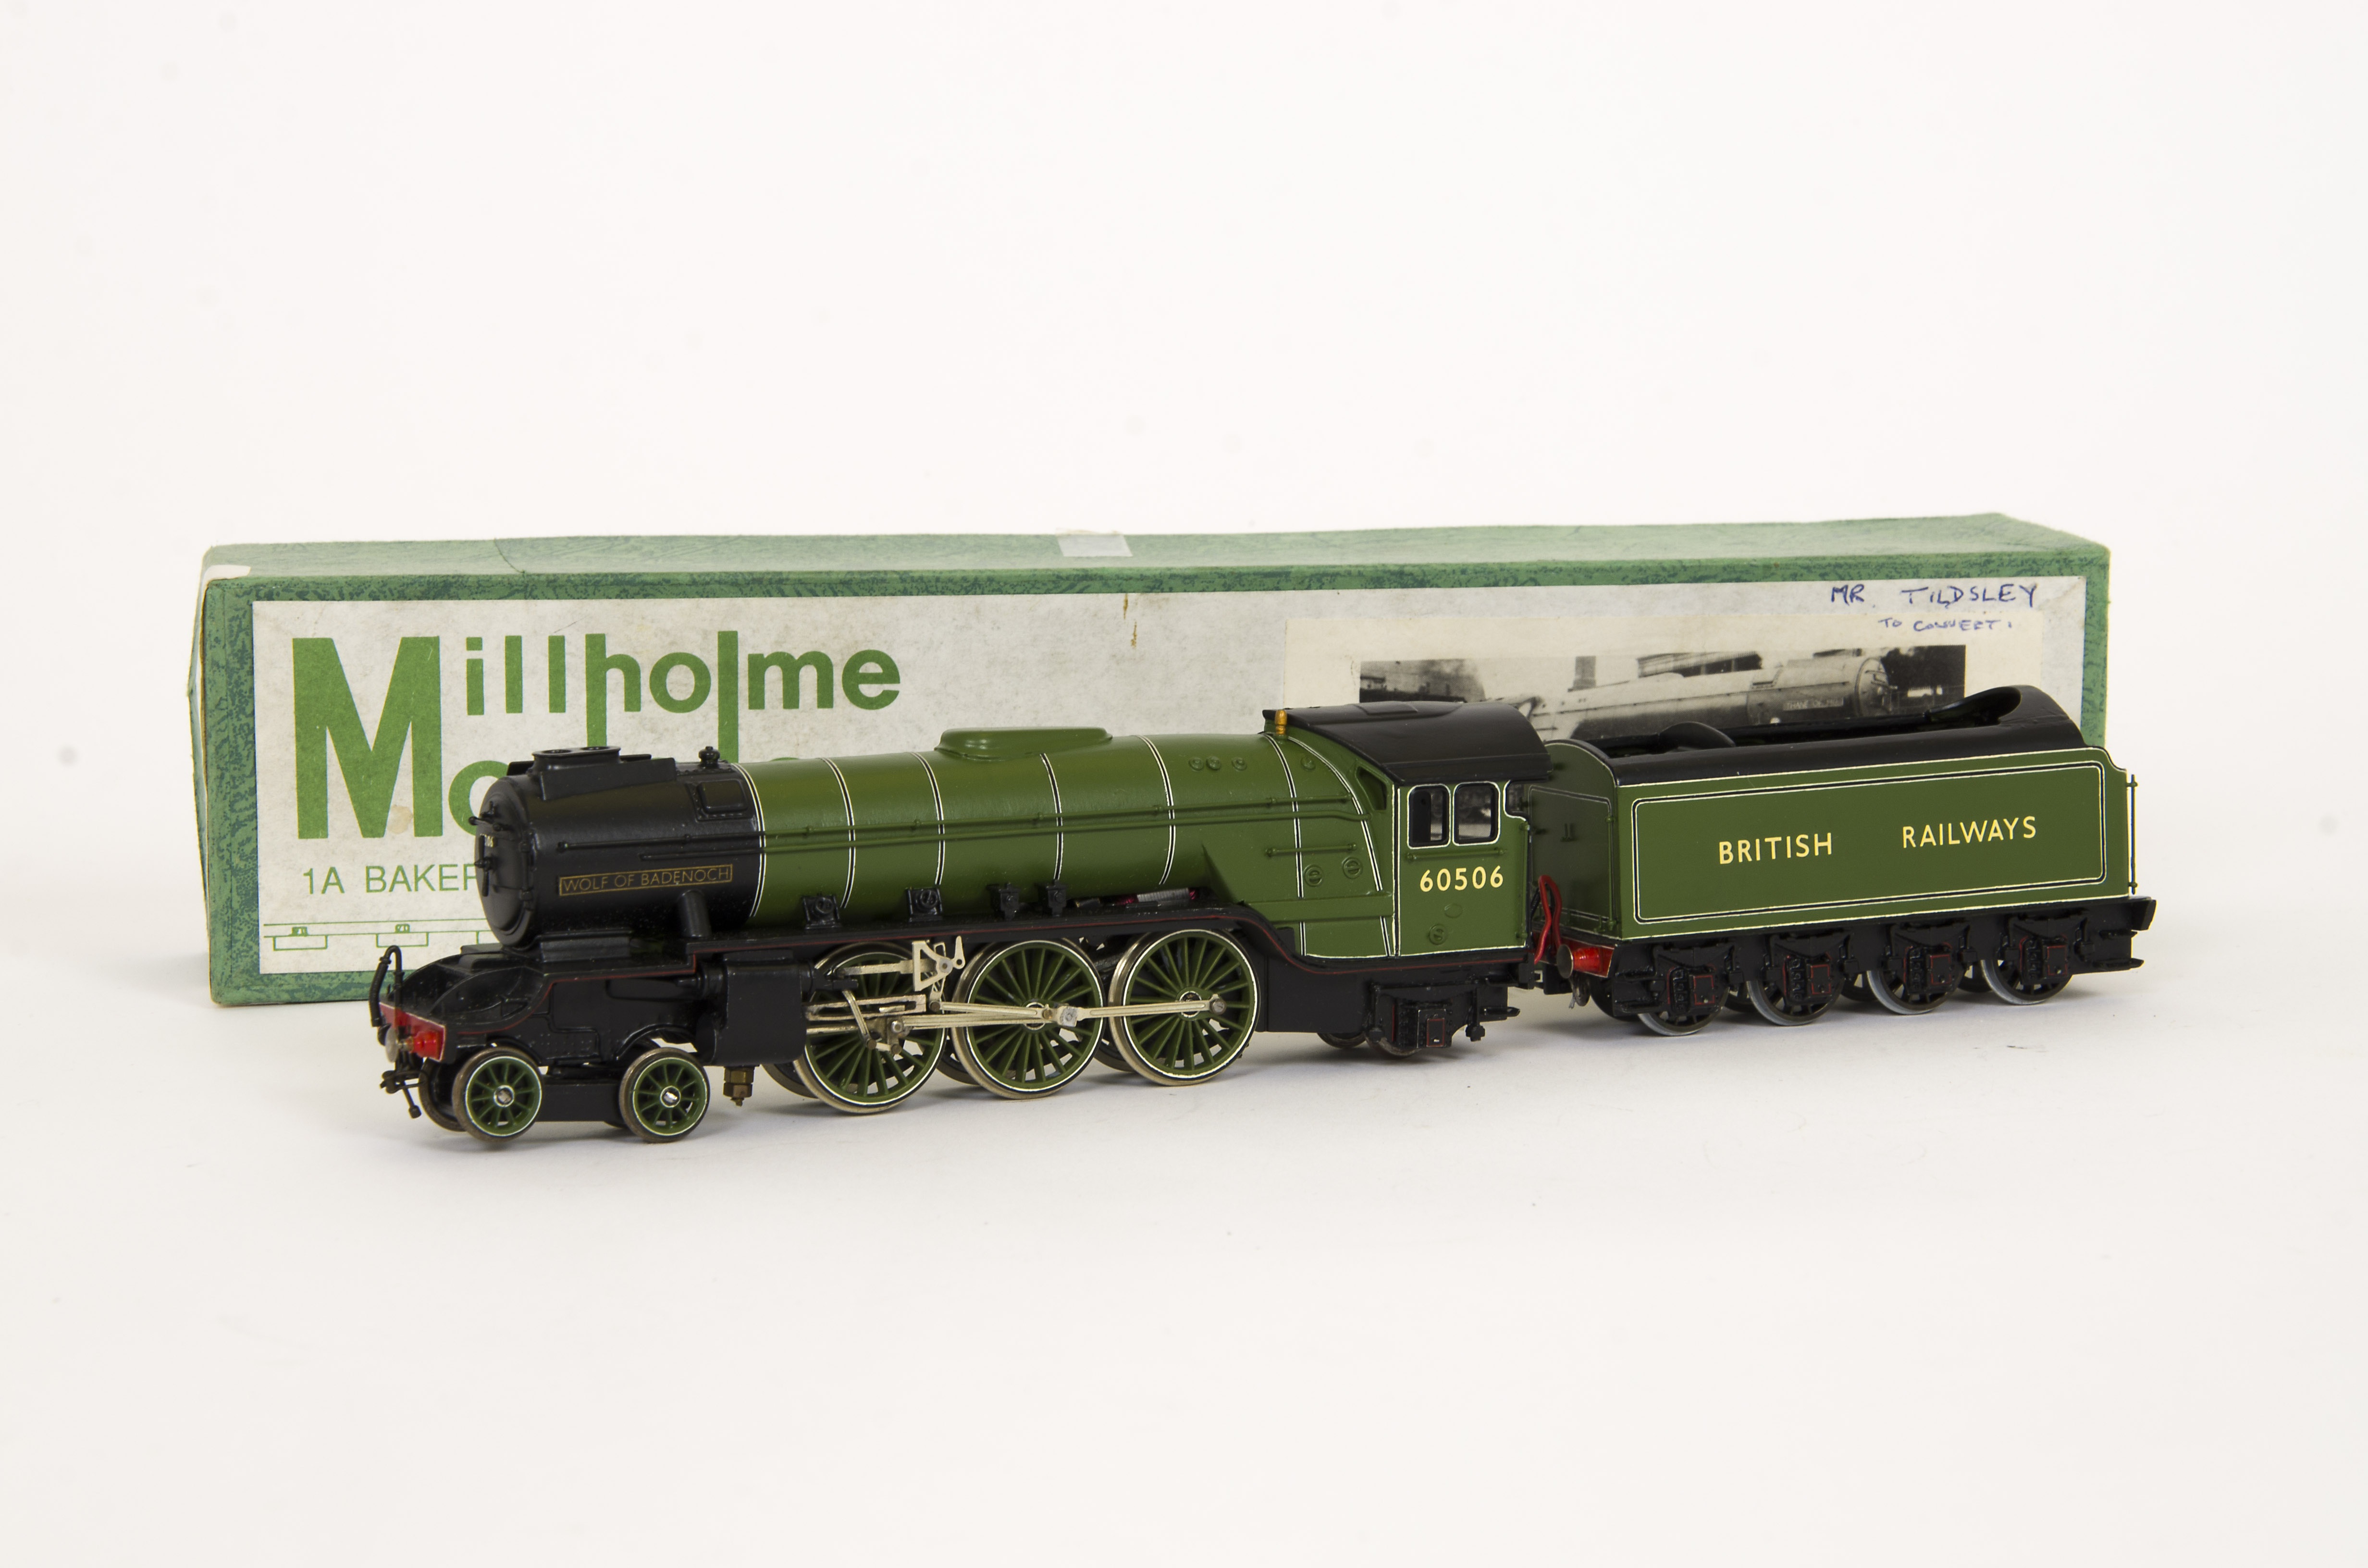 Millholme Models 00 Gauge kitbuilt LNER A2/3 Locomotive and Tender, finished In British Railways